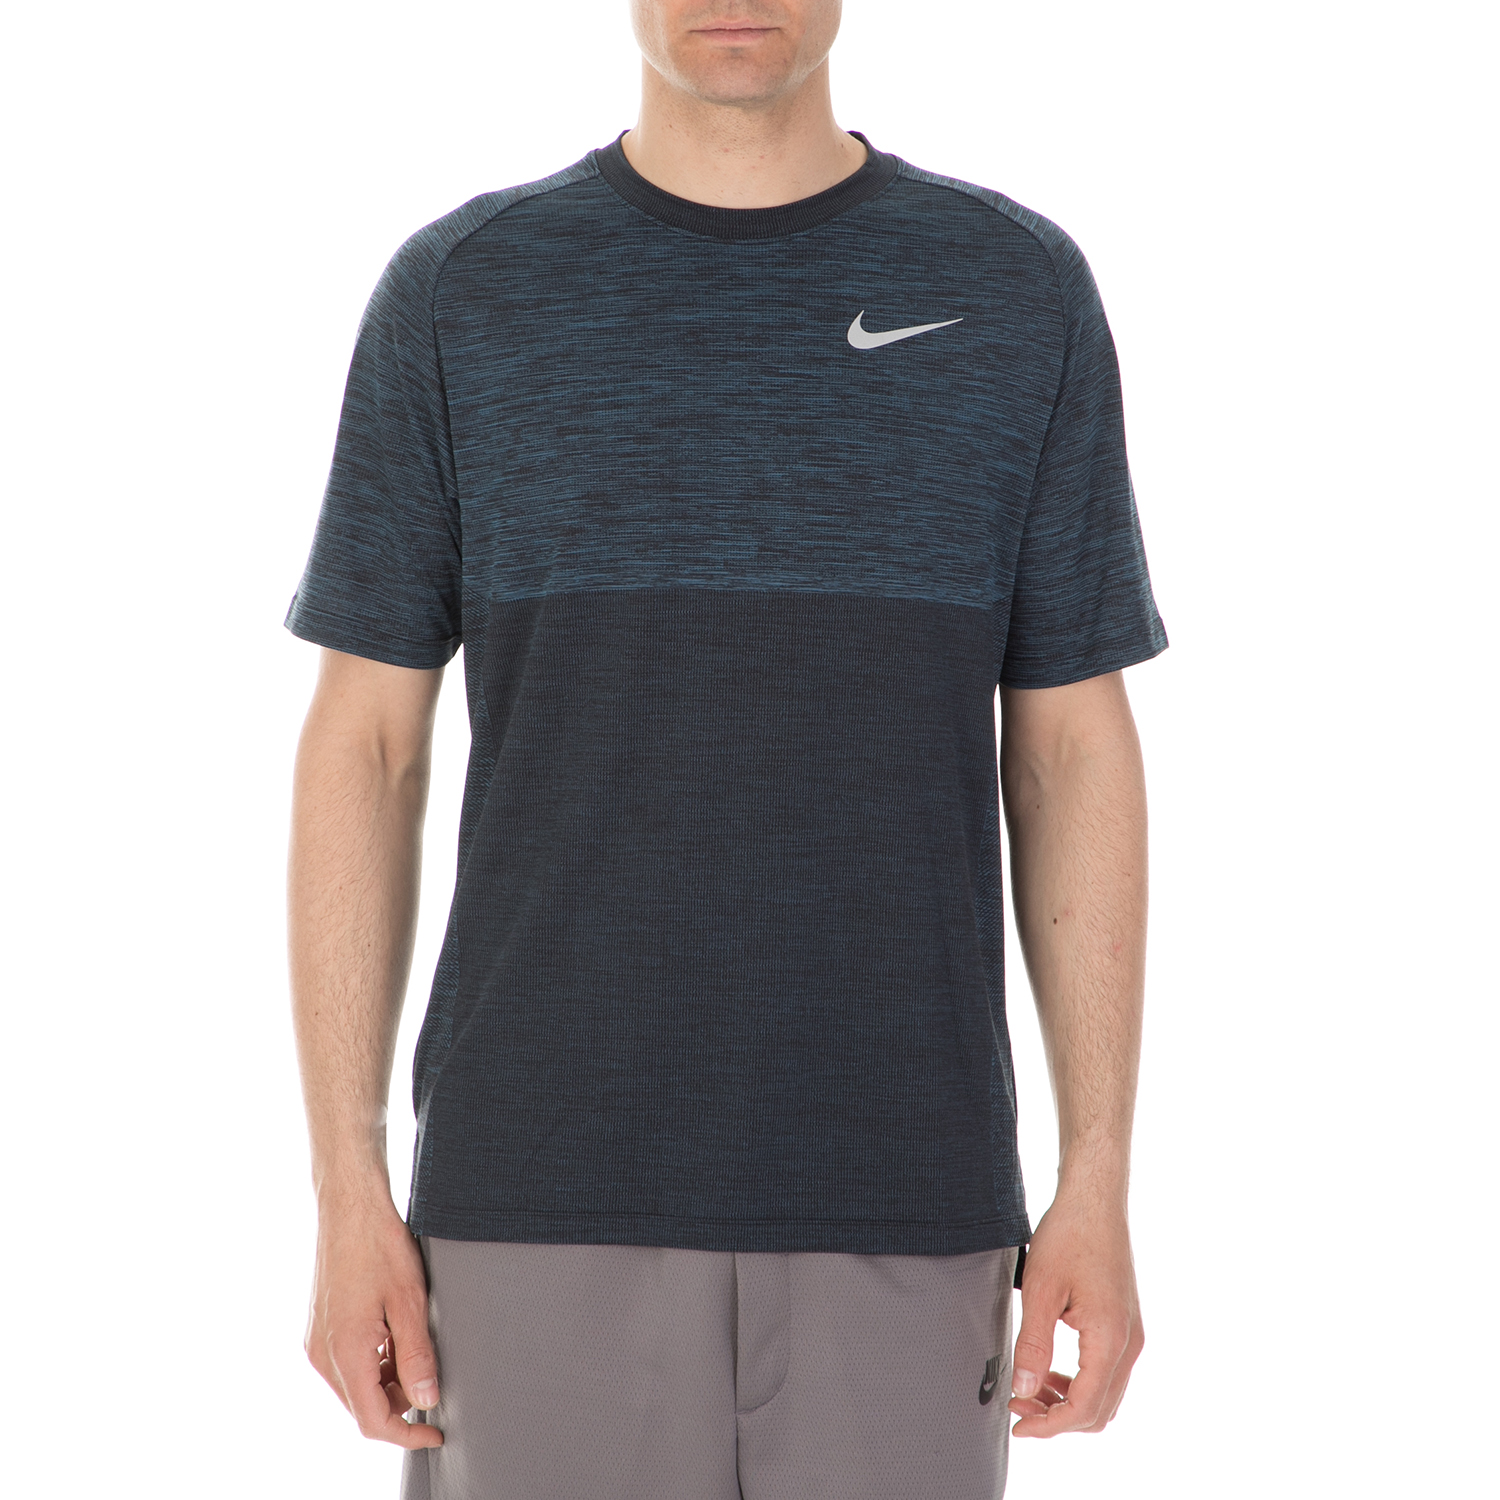 Ανδρικά/Ρούχα/Αθλητικά/T-shirt NIKE - Ανδρική κοντομάνικη μπλούζα Nike DRY MEDALIST TOP μπλε